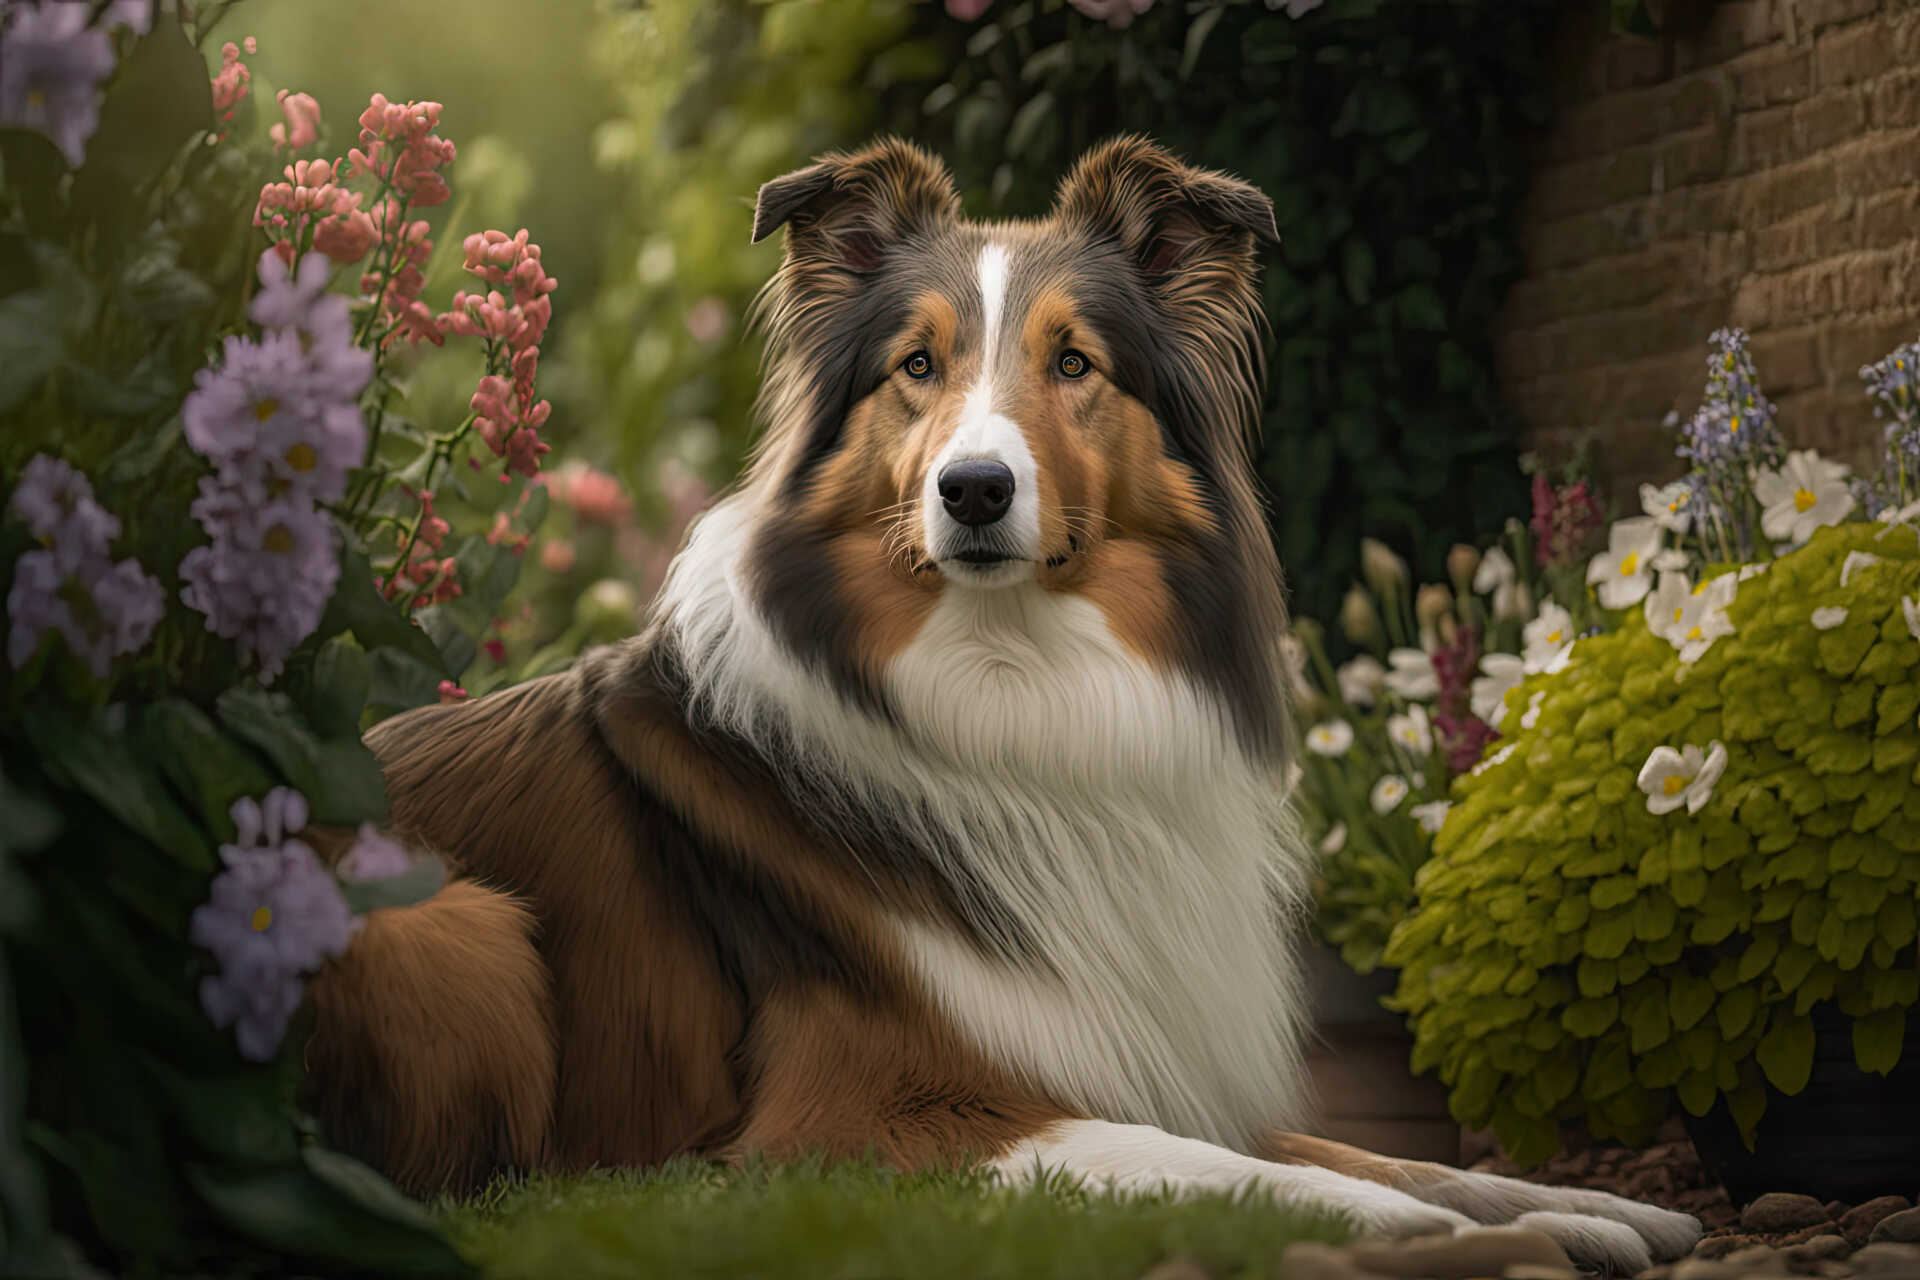 Collie dog in a garden